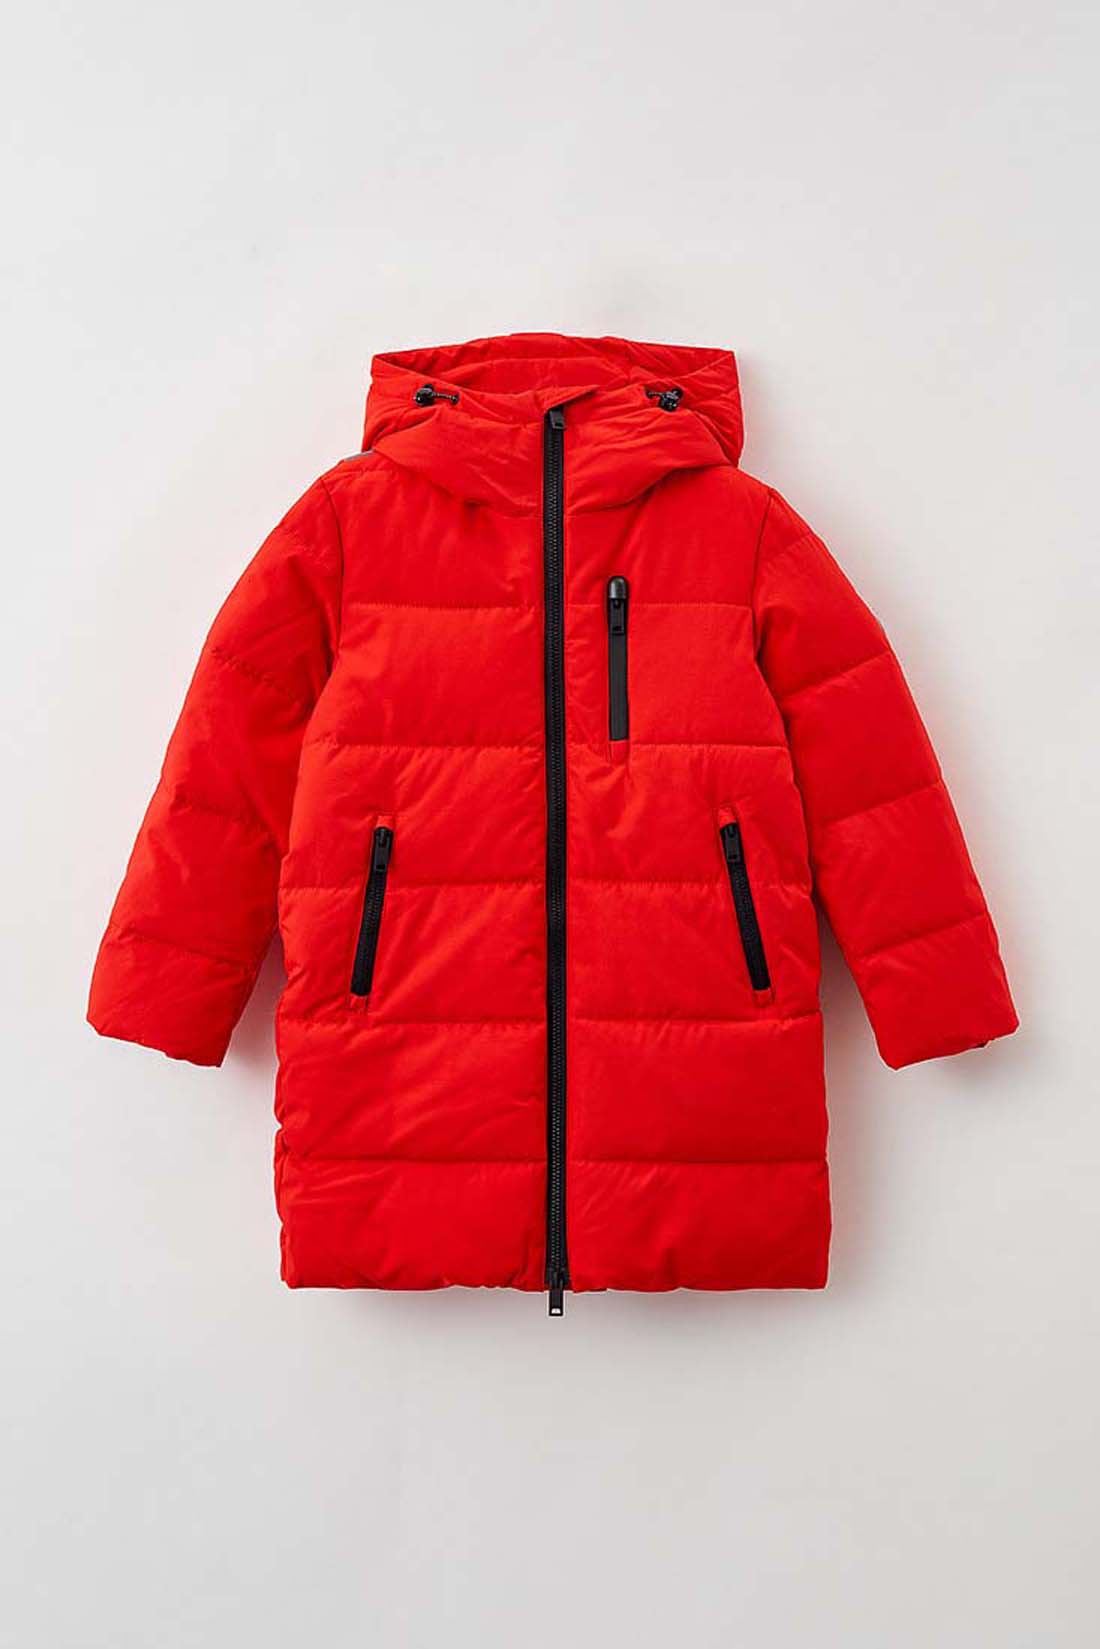 Куртка (Эко пух) Baon BK541504 цв. красный р. 146